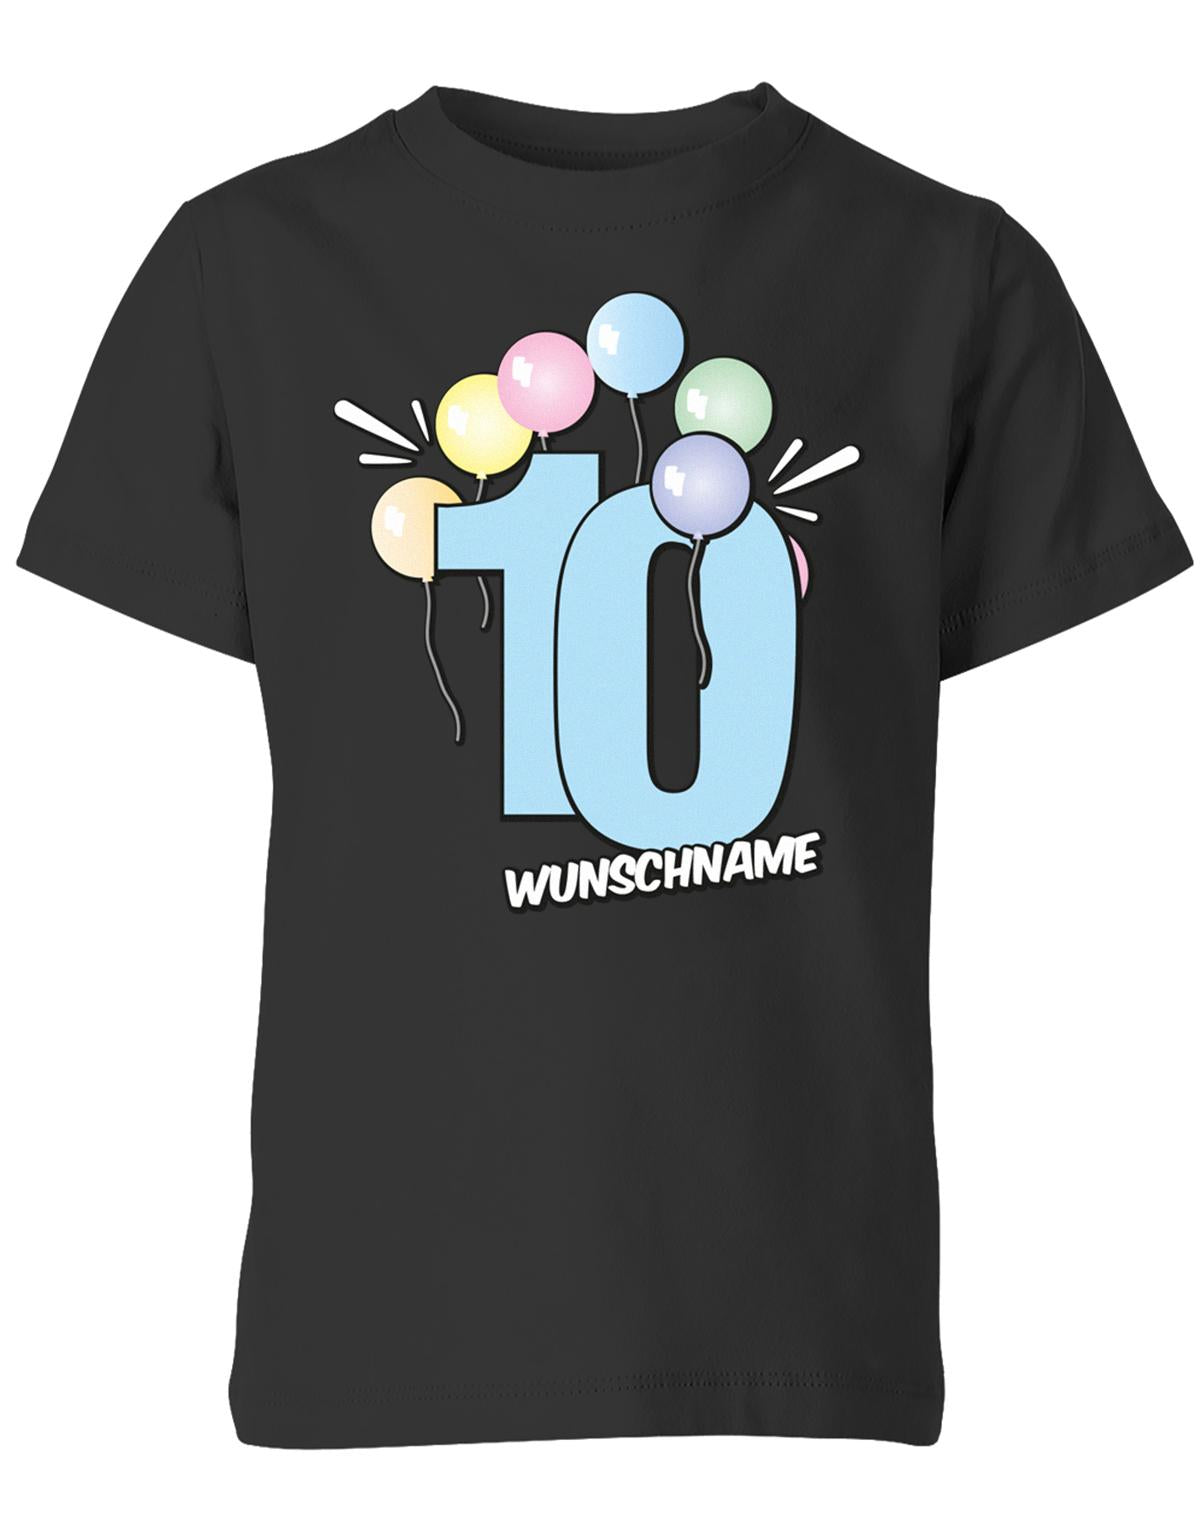 Luftballons-pastell-10-geburtstag-wunschname-kinder-shirt-schwarz